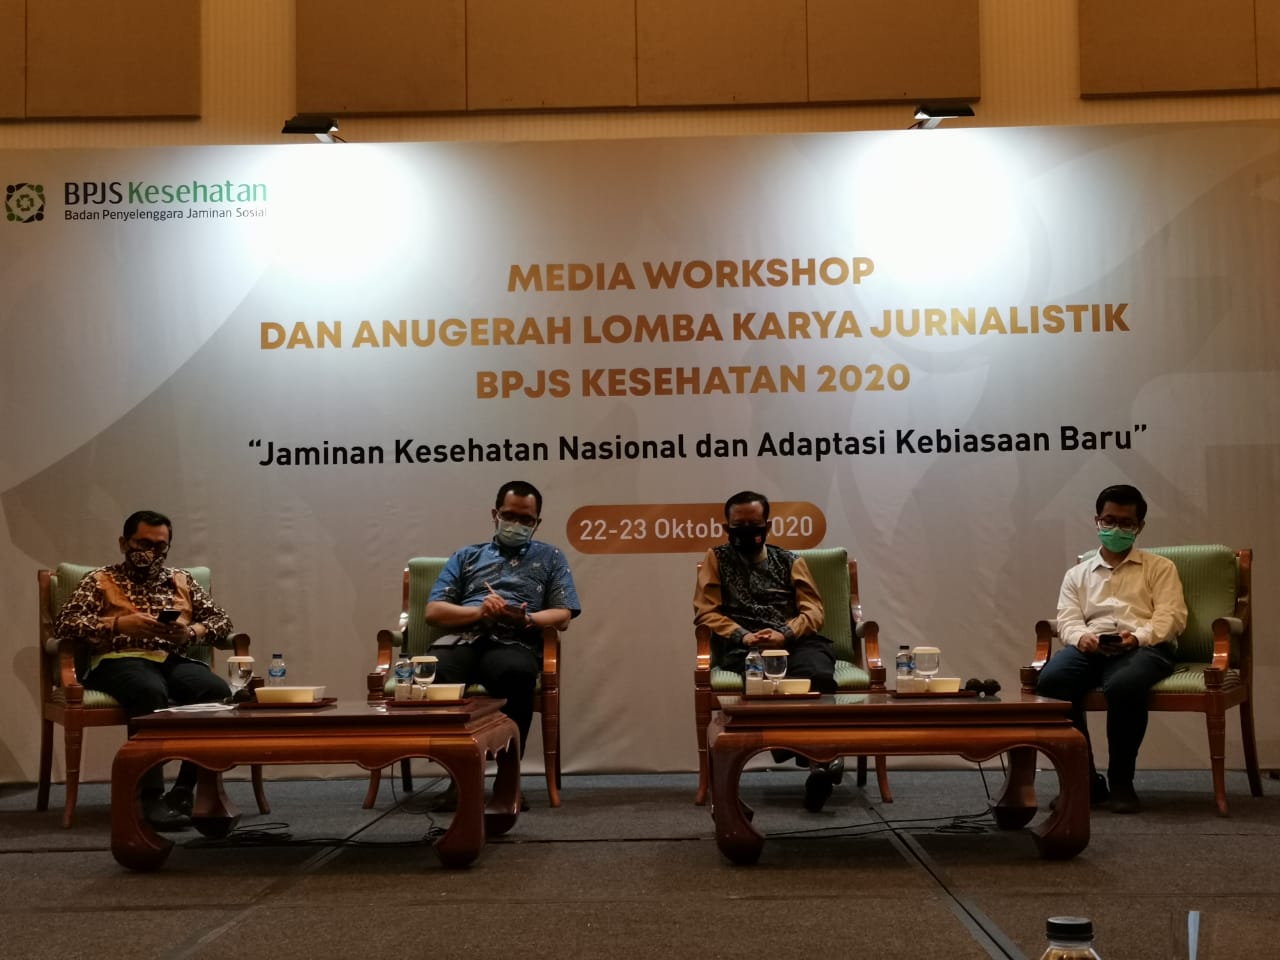 BPJS Kesehatan Gelar Media Workshop dan Anugerah Lomba Jurnalistik 2020